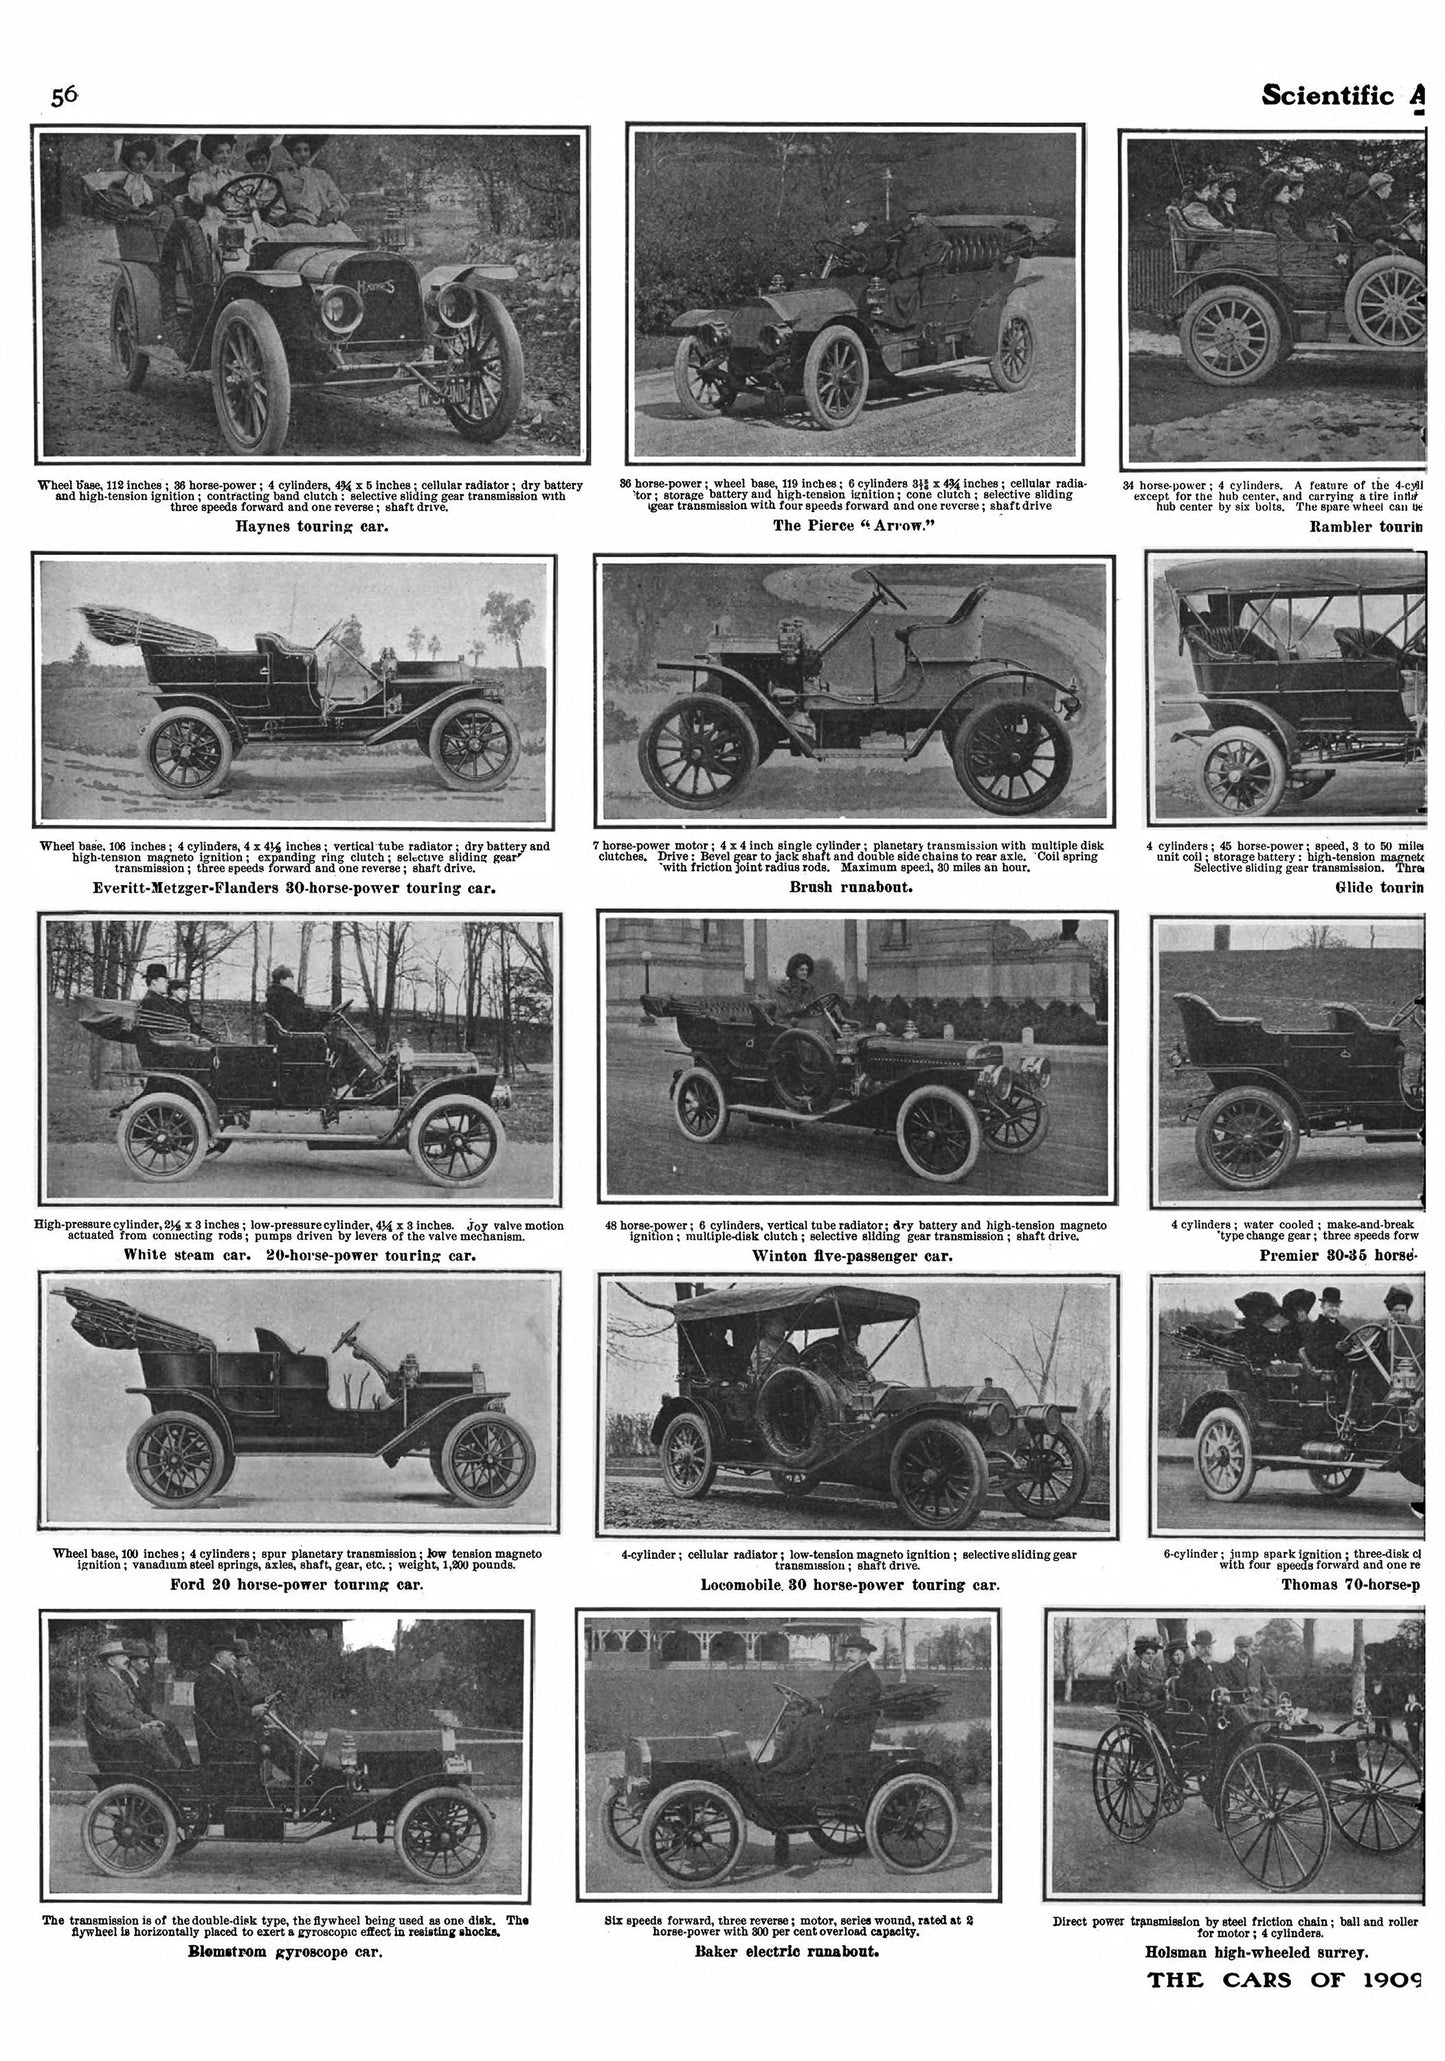 Antique Car Catalog Pages Set 1 [60 Images]